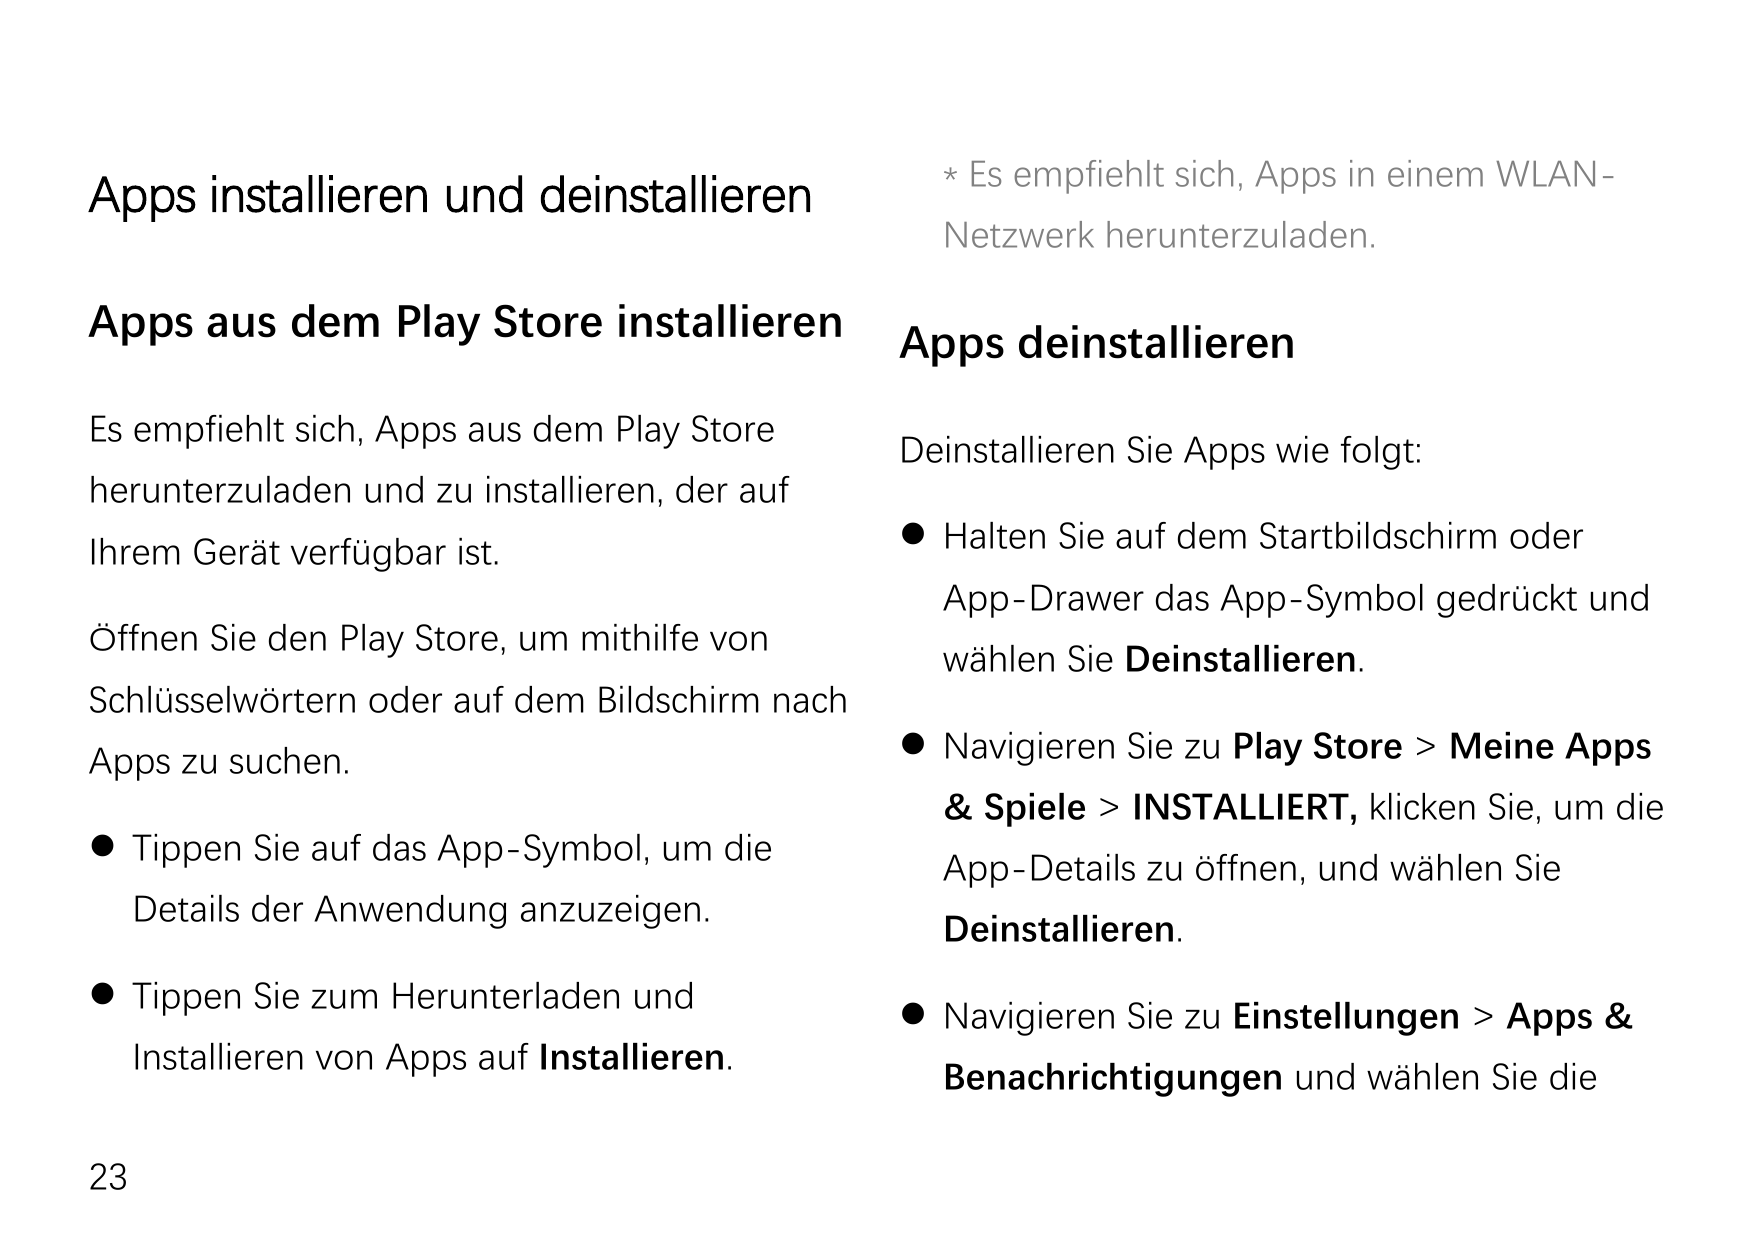 Apps installieren und deinstallierenApps aus dem Play Store installierenEs empfiehlt sich, Apps aus dem Play Storeherunterzulade